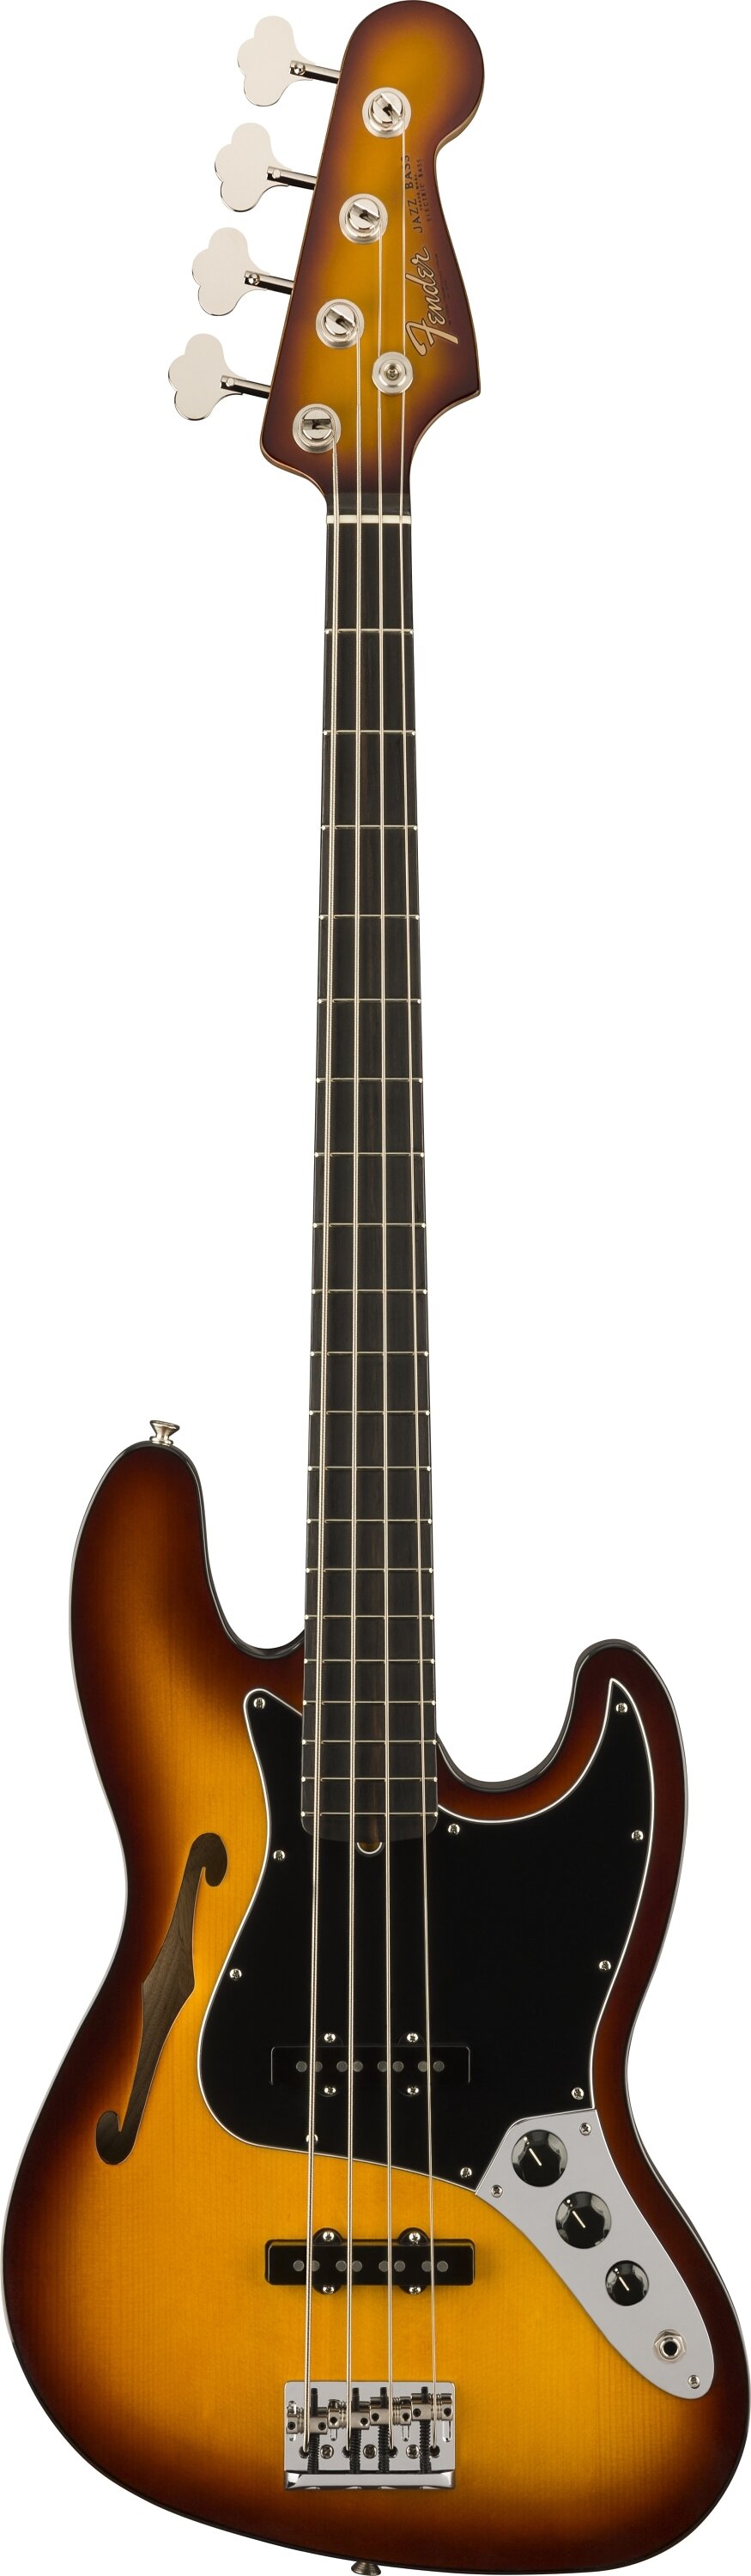 Fender 0170291830